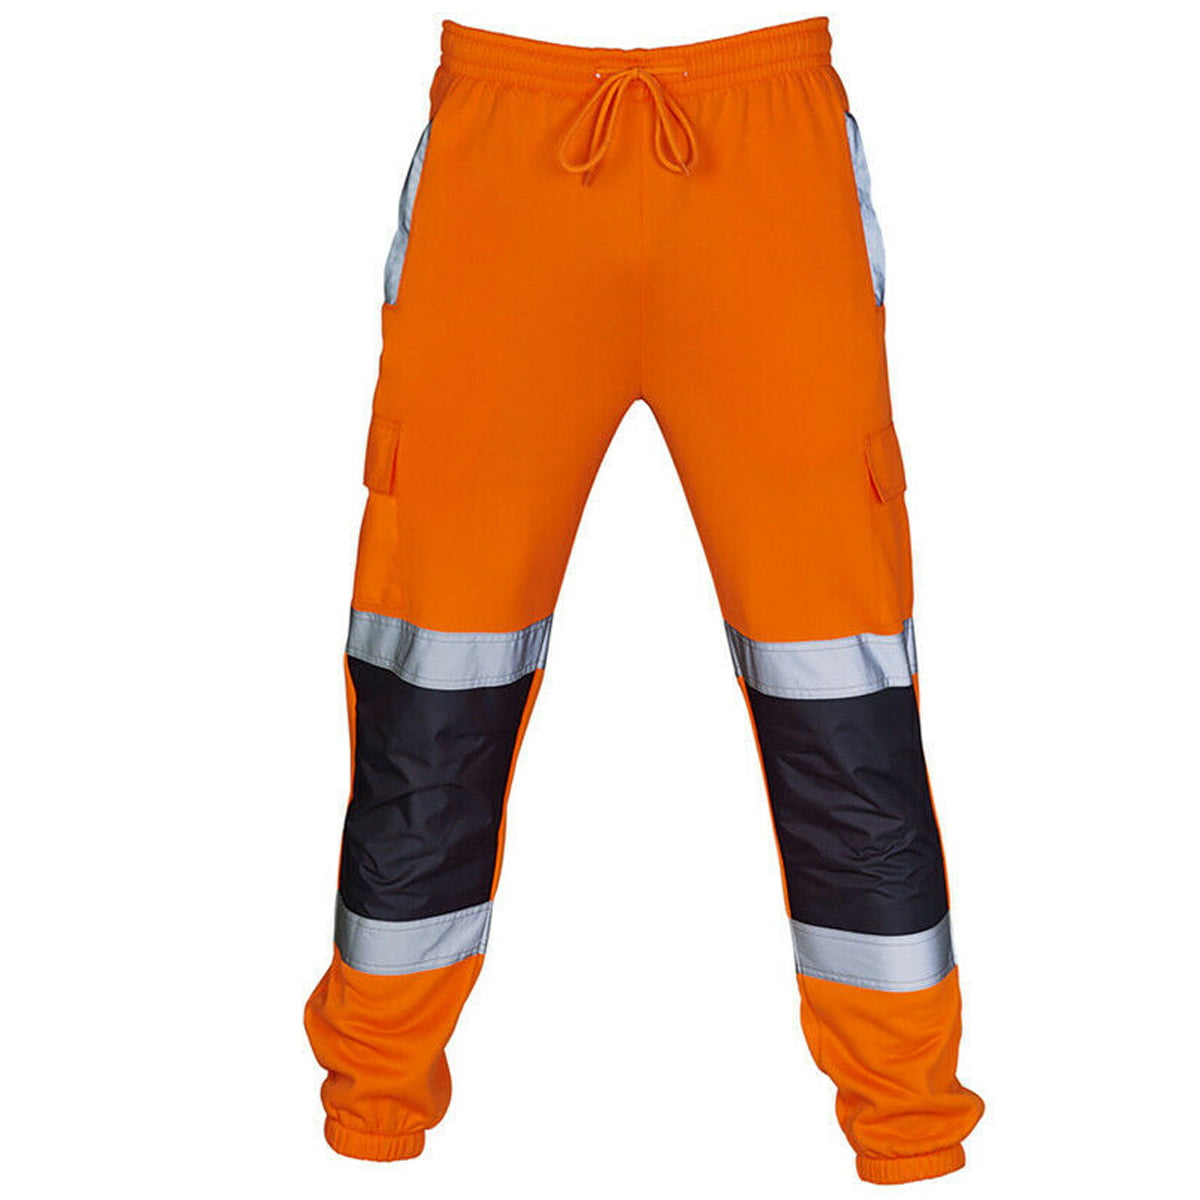 Men Hi Viz Vis High Visibility Work Safety Sweatpants Tracksuit Bottoms Trouser 